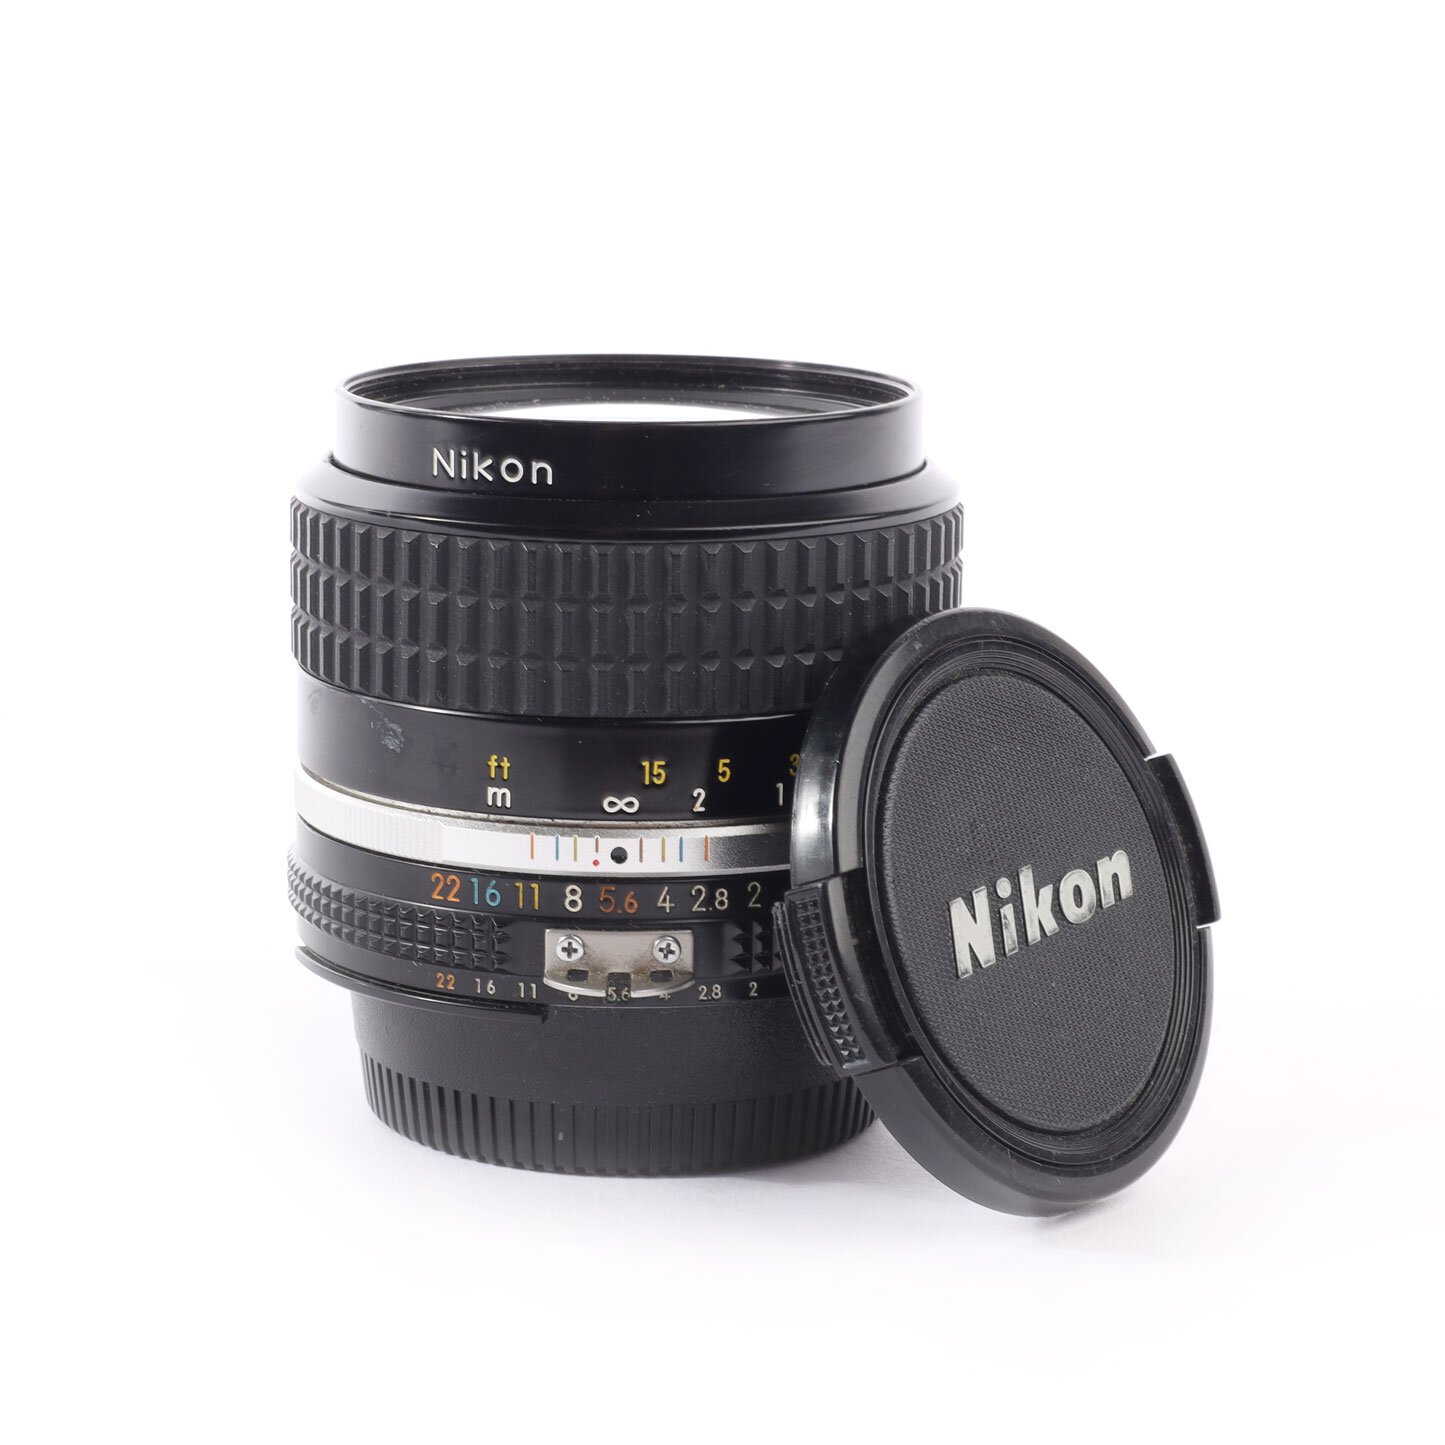 Nikon Nikkor 2/35mm AIS